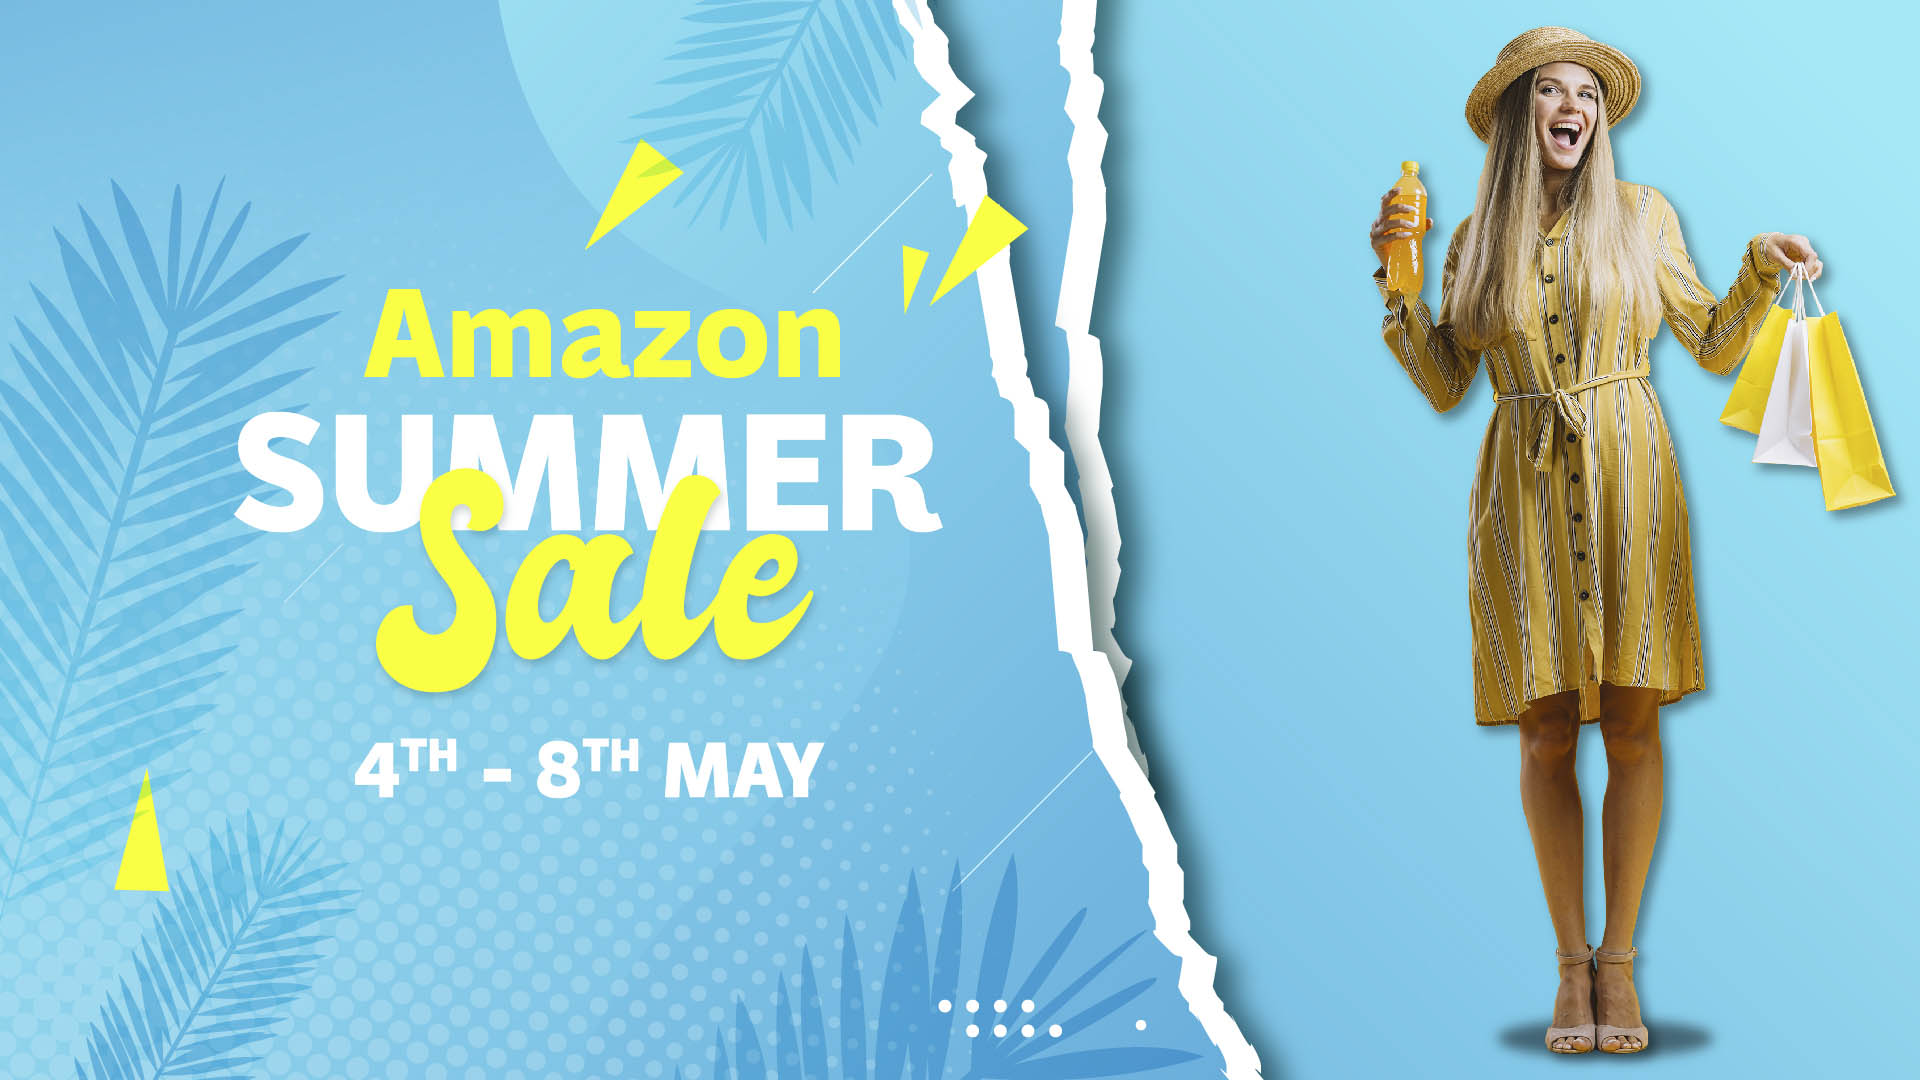 Amazon Summer Sale